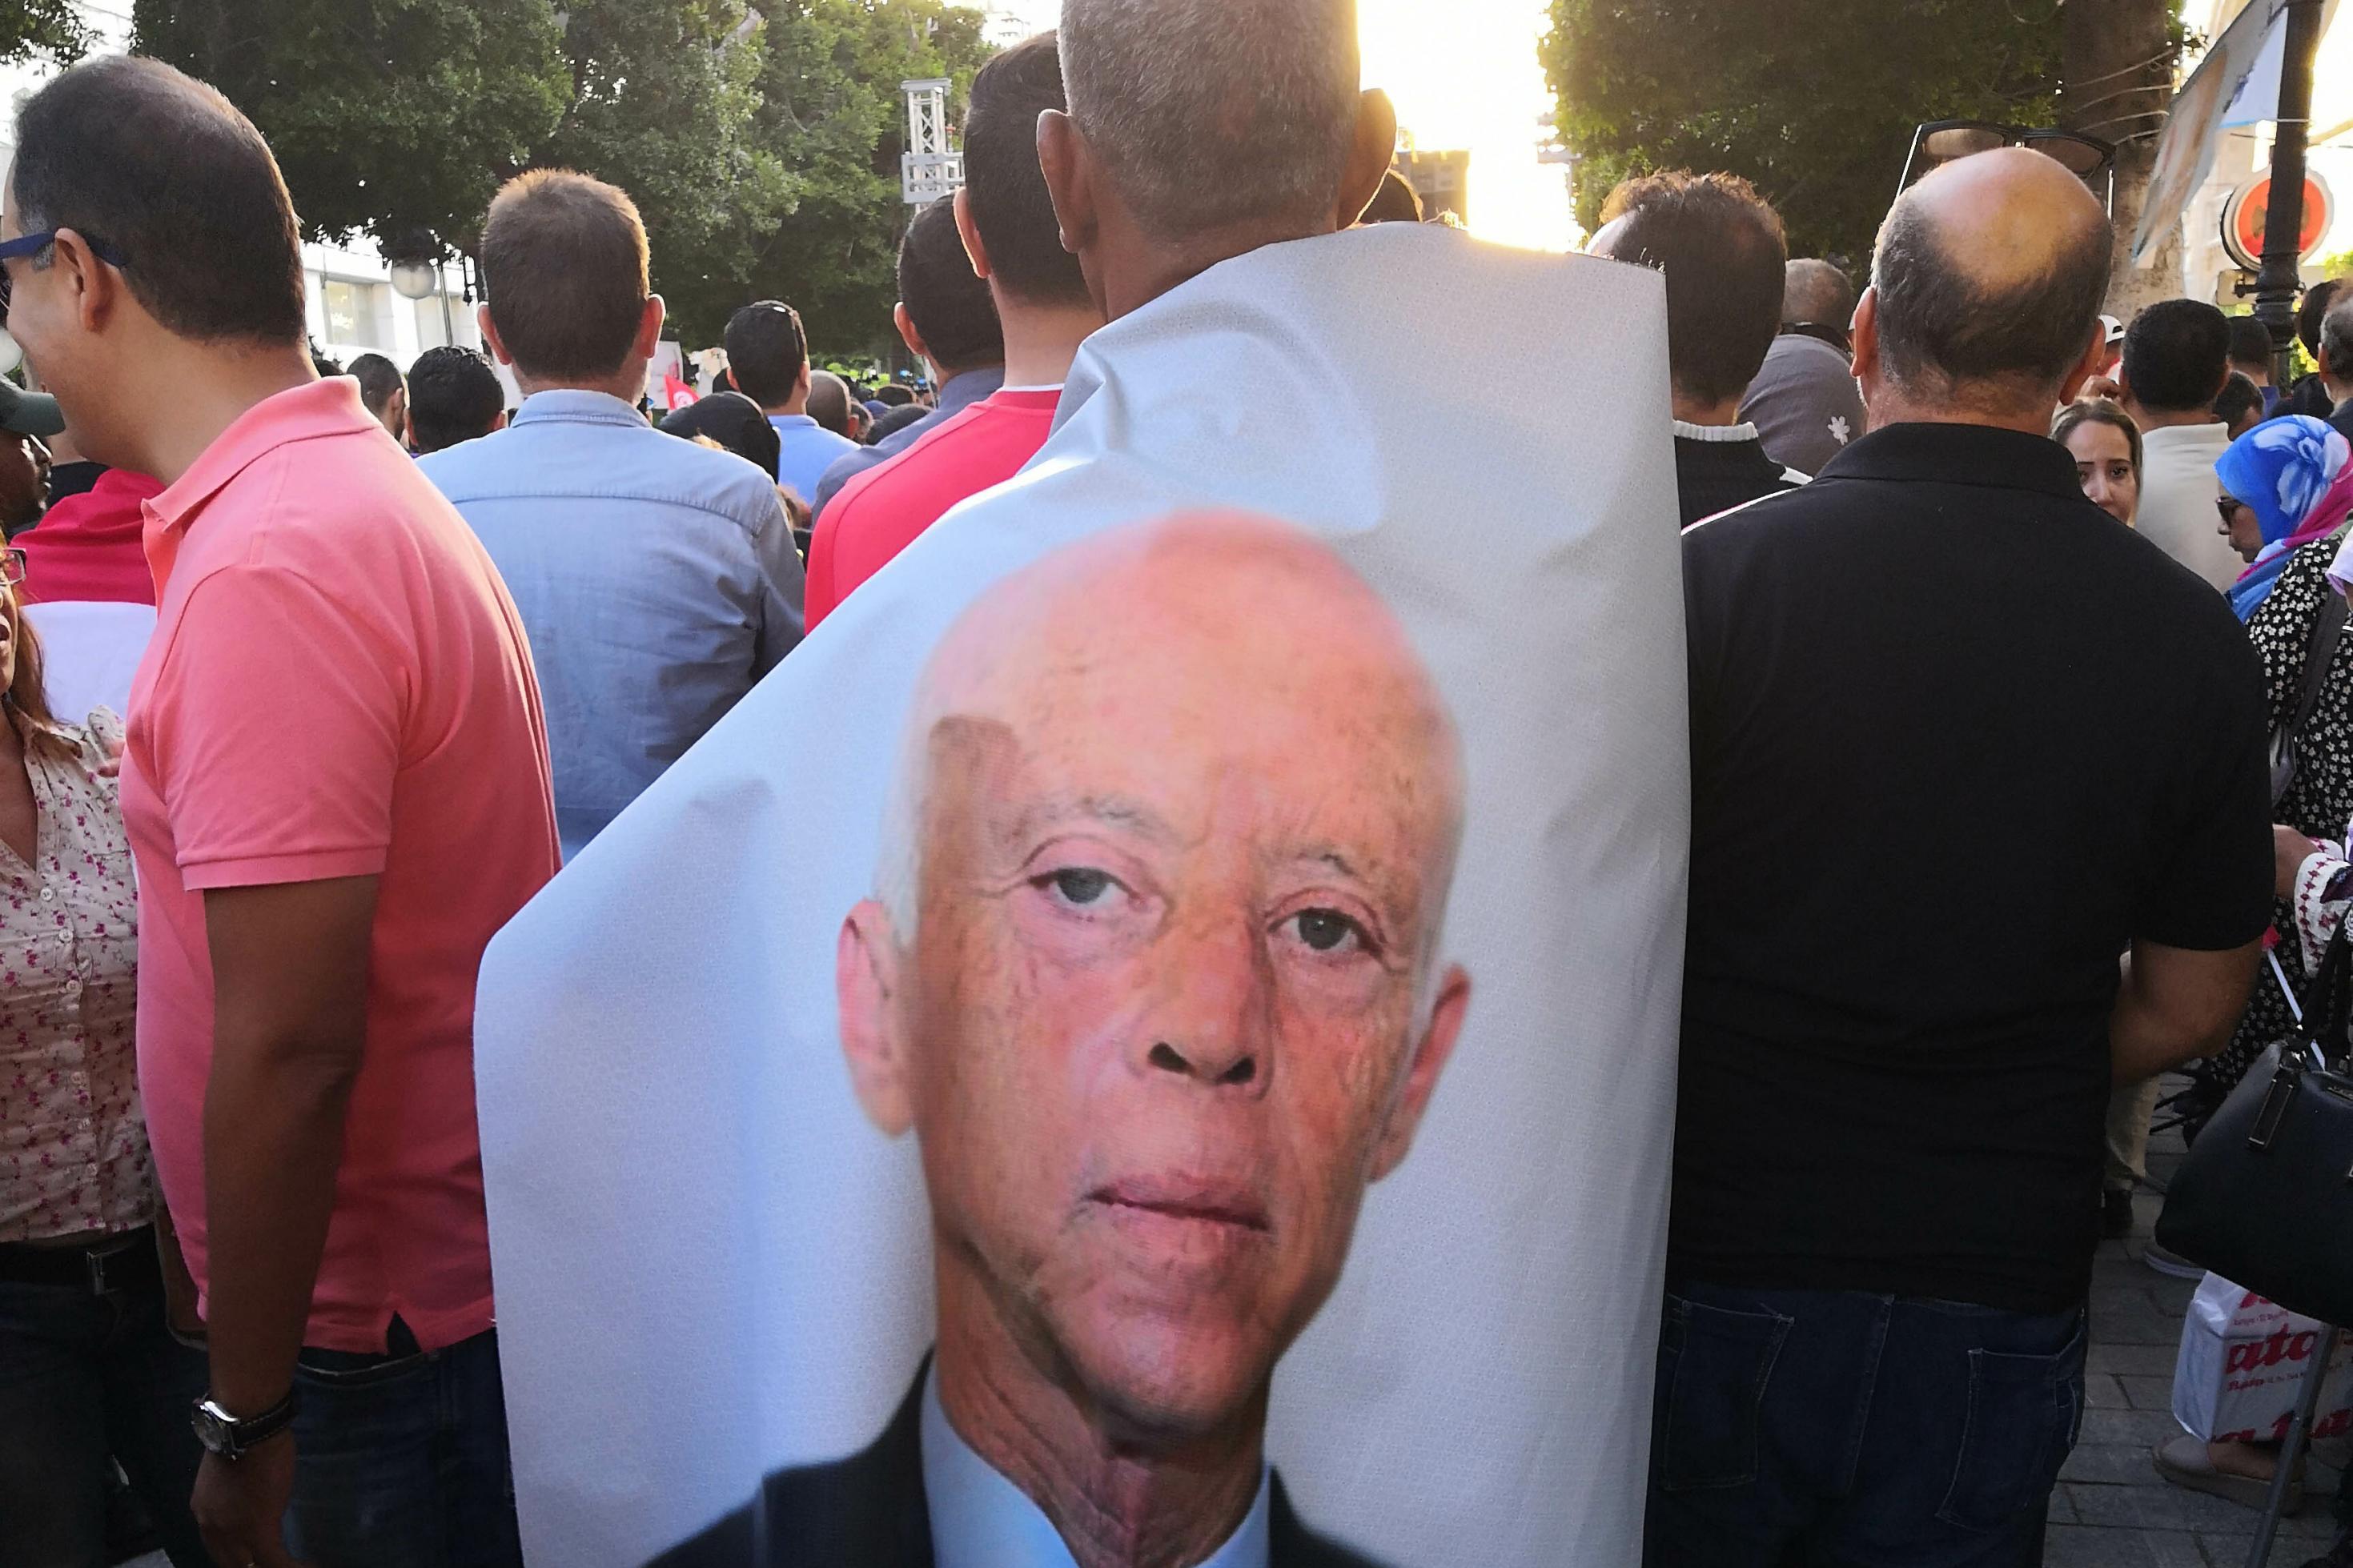 Ein Mann steht während des Präsidentschaftswahlkampfes 2019 in einer Menschenmenge auf der Ave Bourguiba der Hauptstadt Tunis. Um die Schultern geschlungen trägt er eine fast bodenlange Plane, auf der das Gesicht von Kais Saïed abgebildet ist.